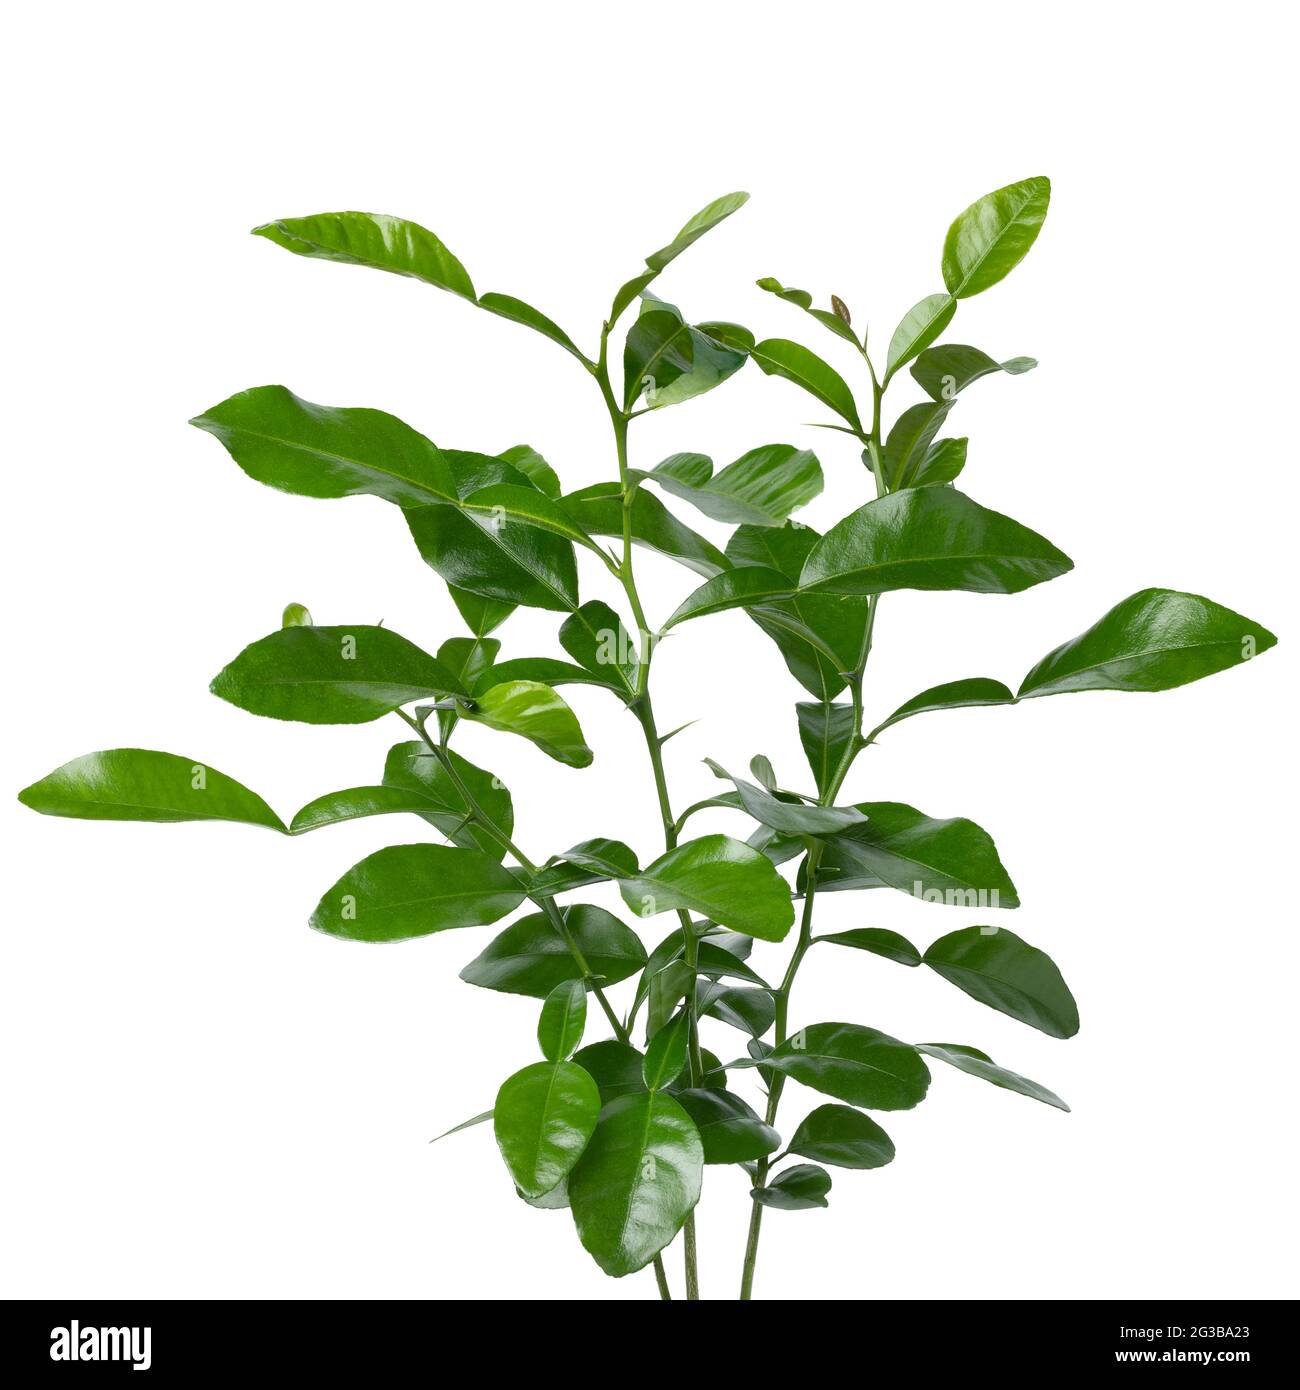 La plante de chaux Kaffir, verte et aromatique, ferme sur fond blanc Banque D'Images